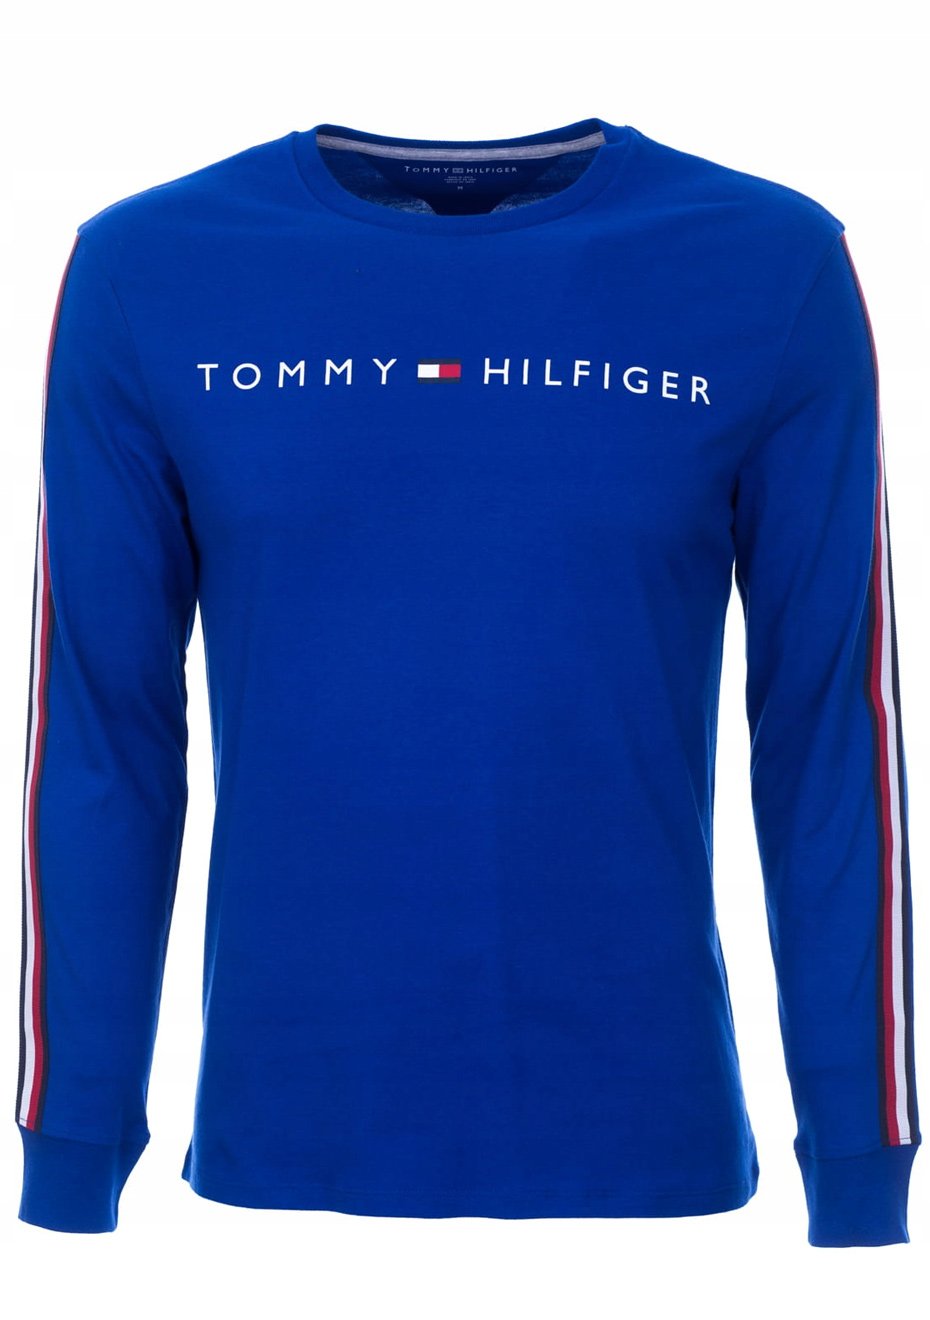 Camisa Polo da Tommy Hilfiger manga longa branca e vermelha - Baby